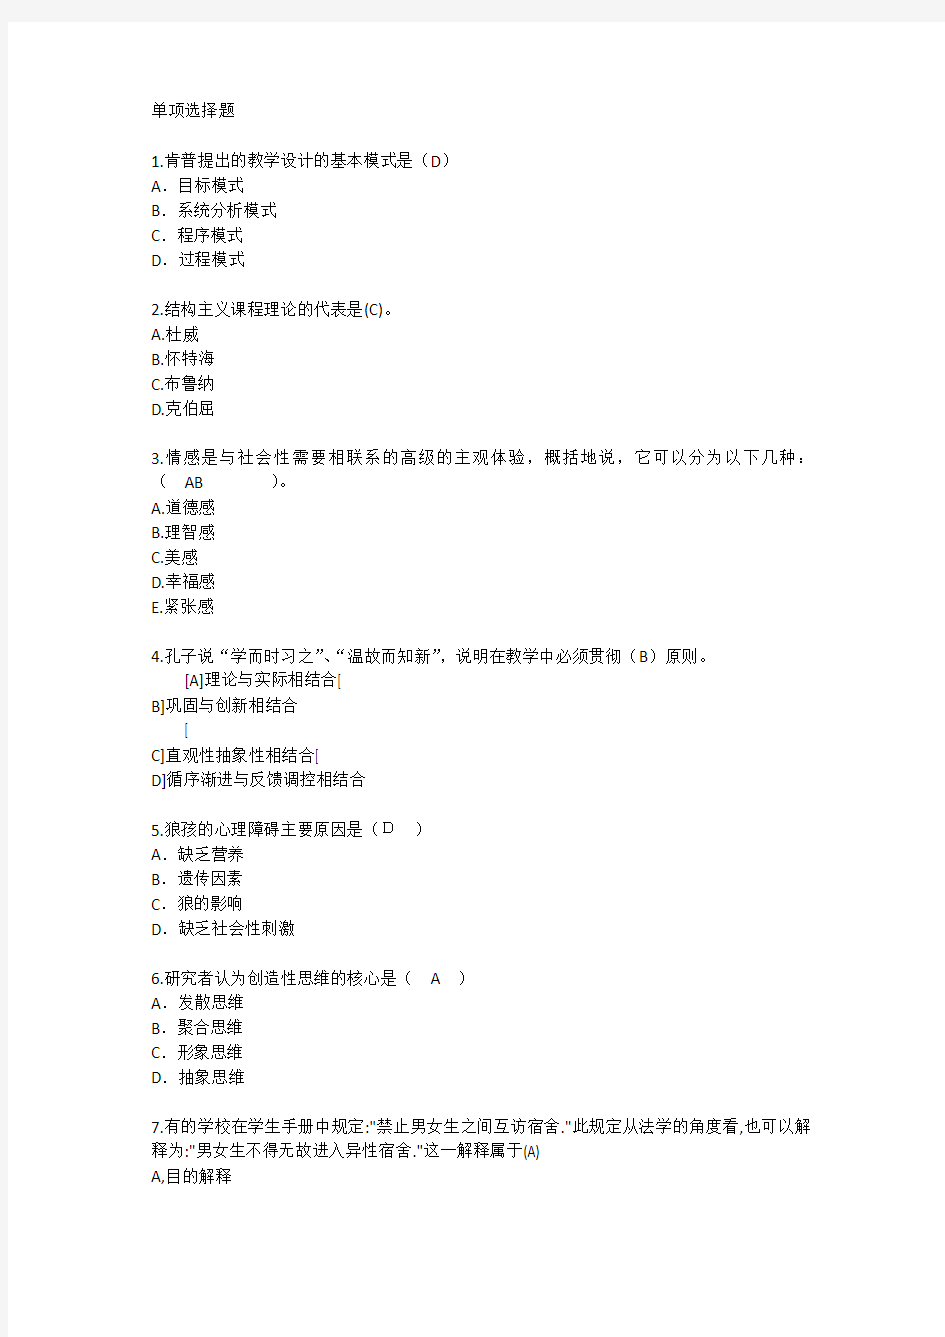 上海教育学心理学试题汇总每日一练(2015.5.6)